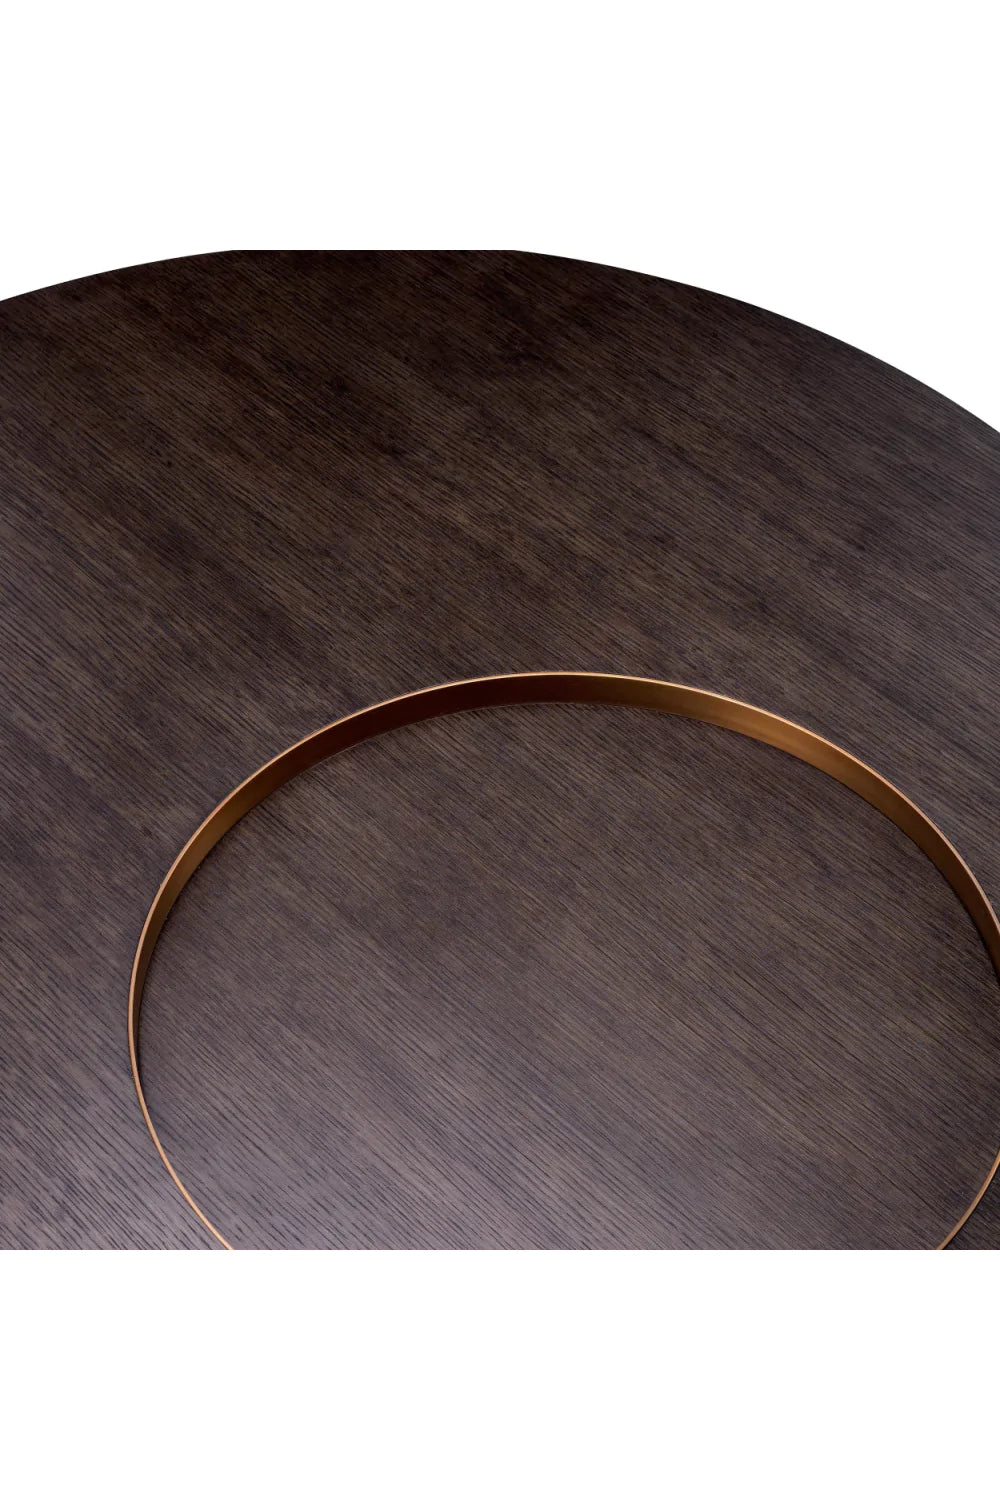 Contemporary Round Coffee Table | Eichholtz Otus | Oroa.com